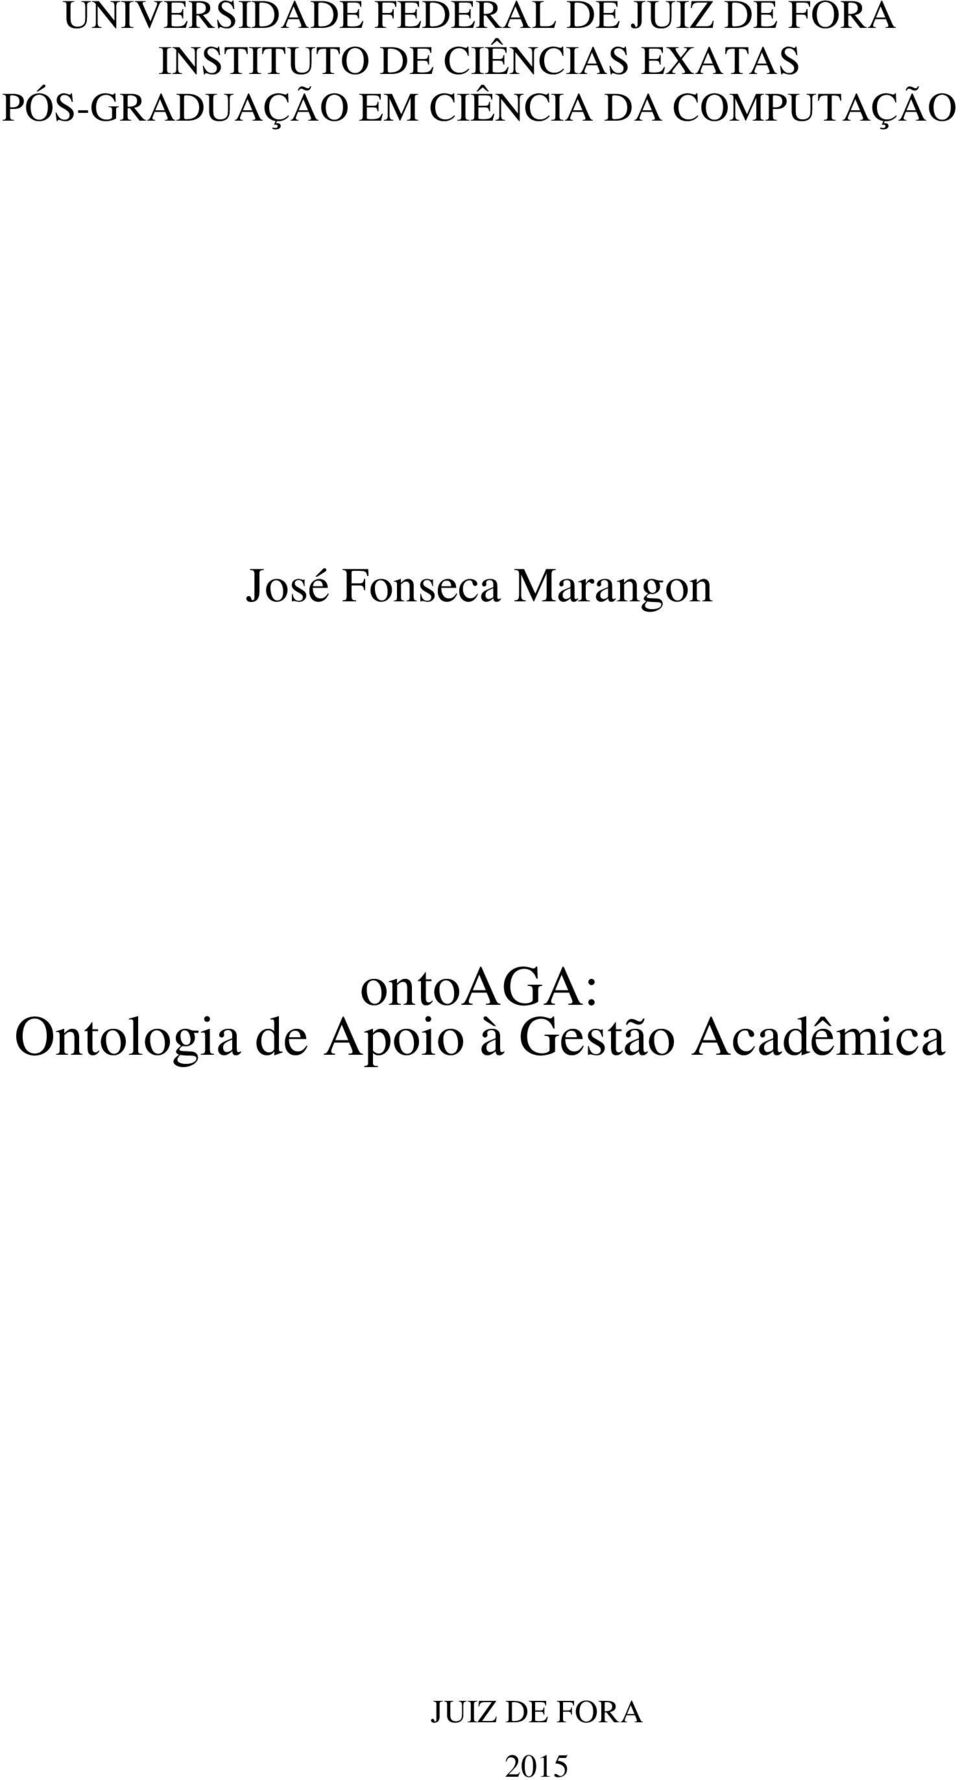 COMPUTAÇÃO José Fonseca Marangon ontoaga: